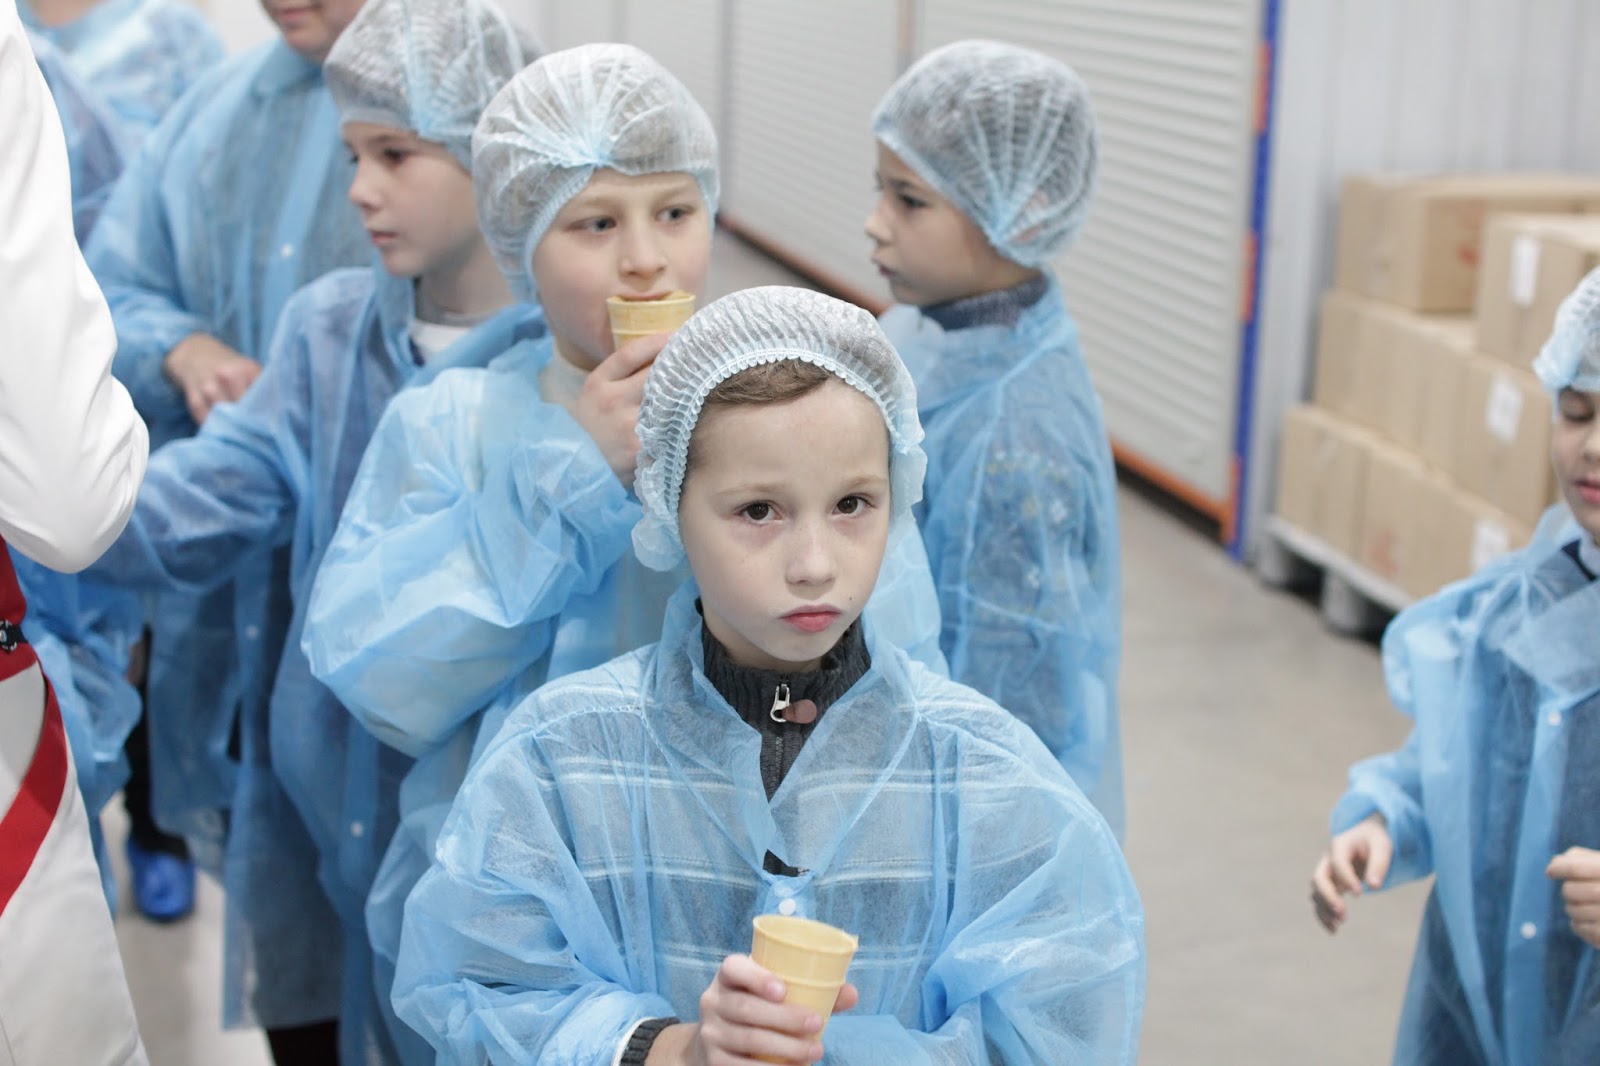 Экскурсии на чистую линию мороженое в москве. Экскурсия на фабрику мороженого чистая линия. Фабрика мороженого чистая линия Москва. Чистая линия мороженое фабрика. Фабрика мороженого Долгопрудный.